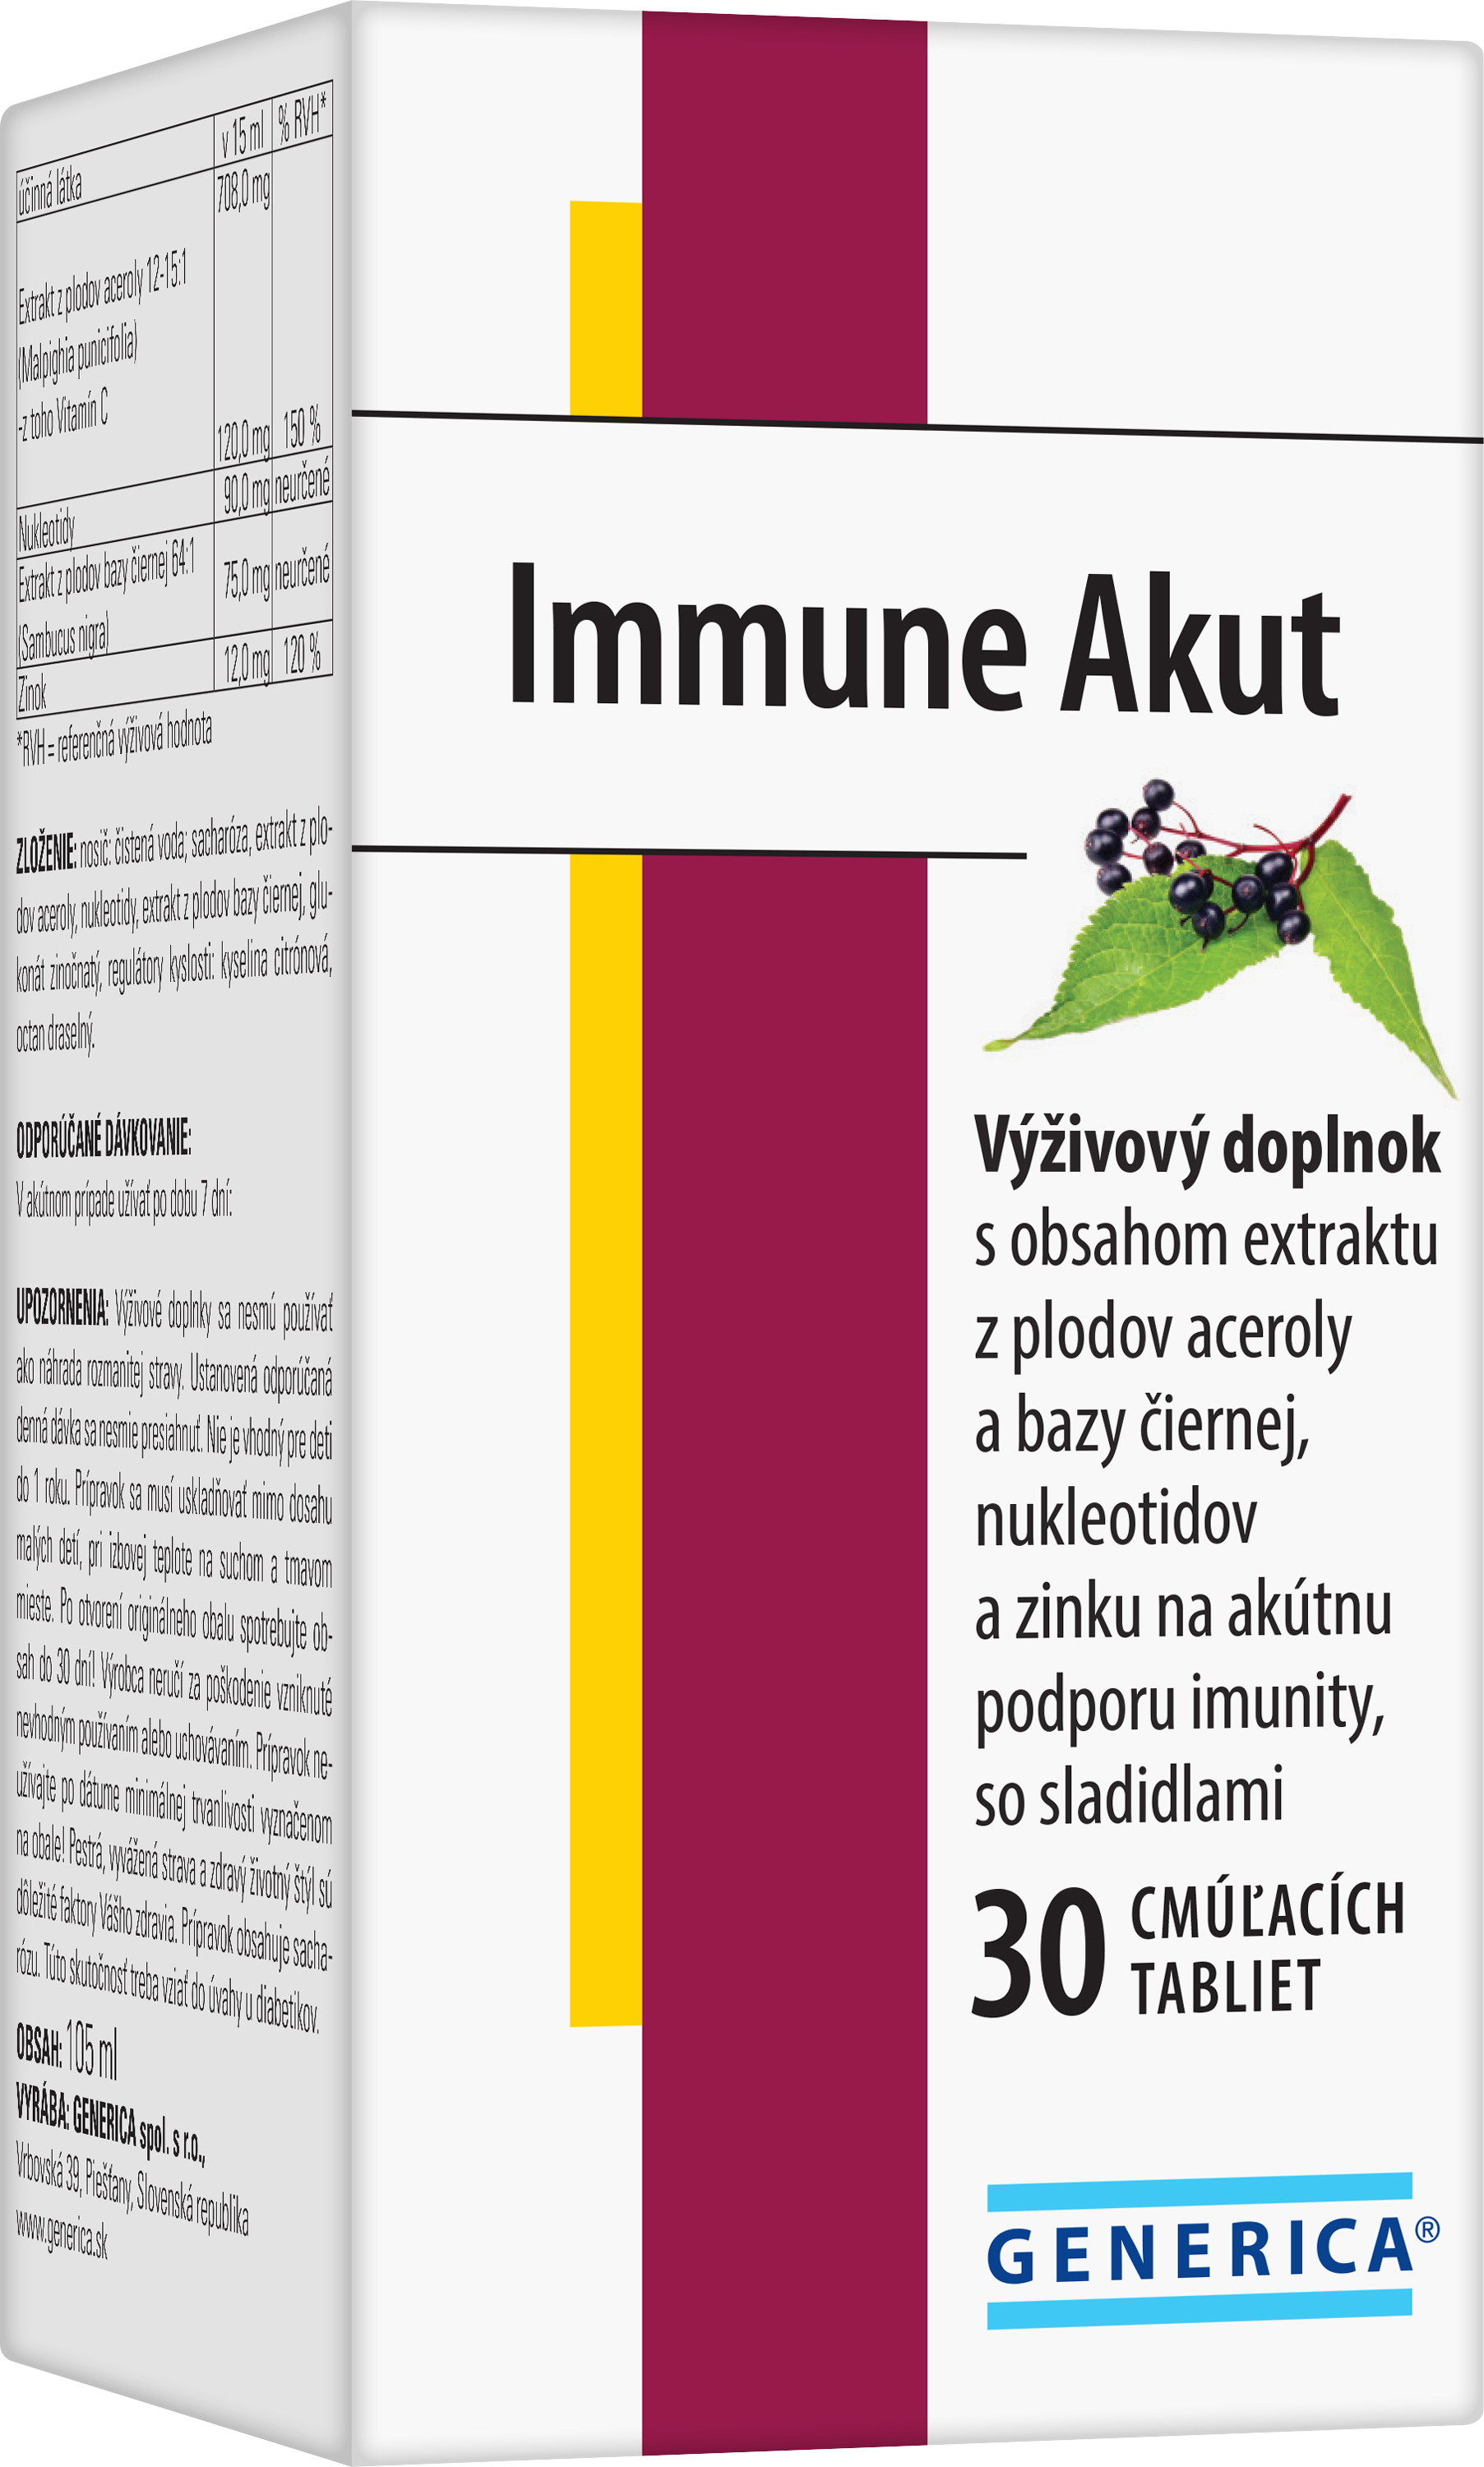 იმუნ აკუთი / Immune Akut